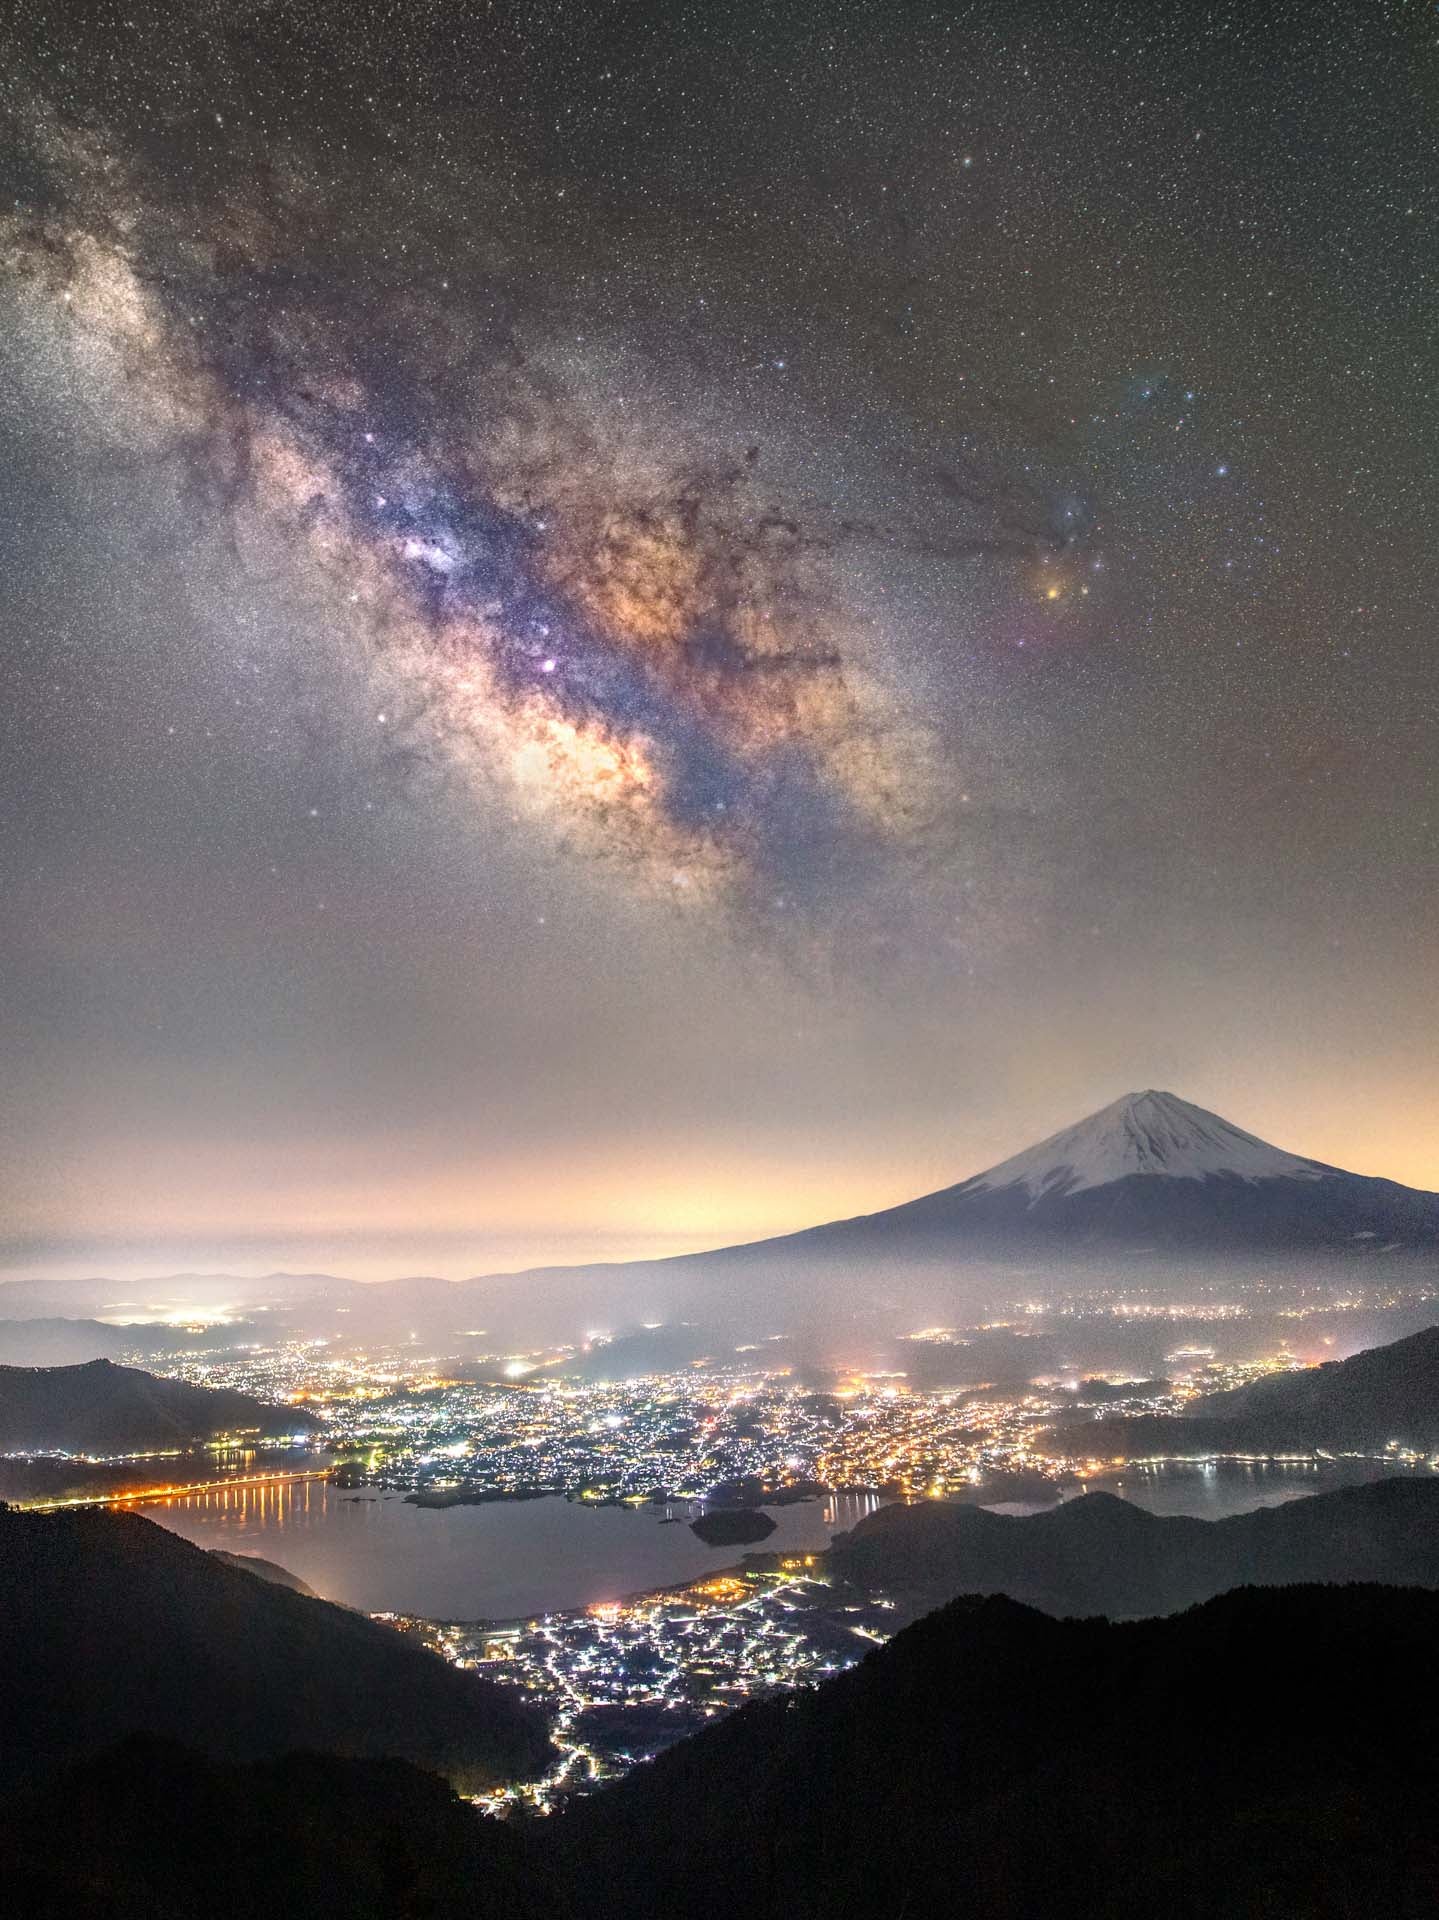 Our galaxy over Yamanashi Prefecture, in Japan. (Photo: Takemochi Yuki)